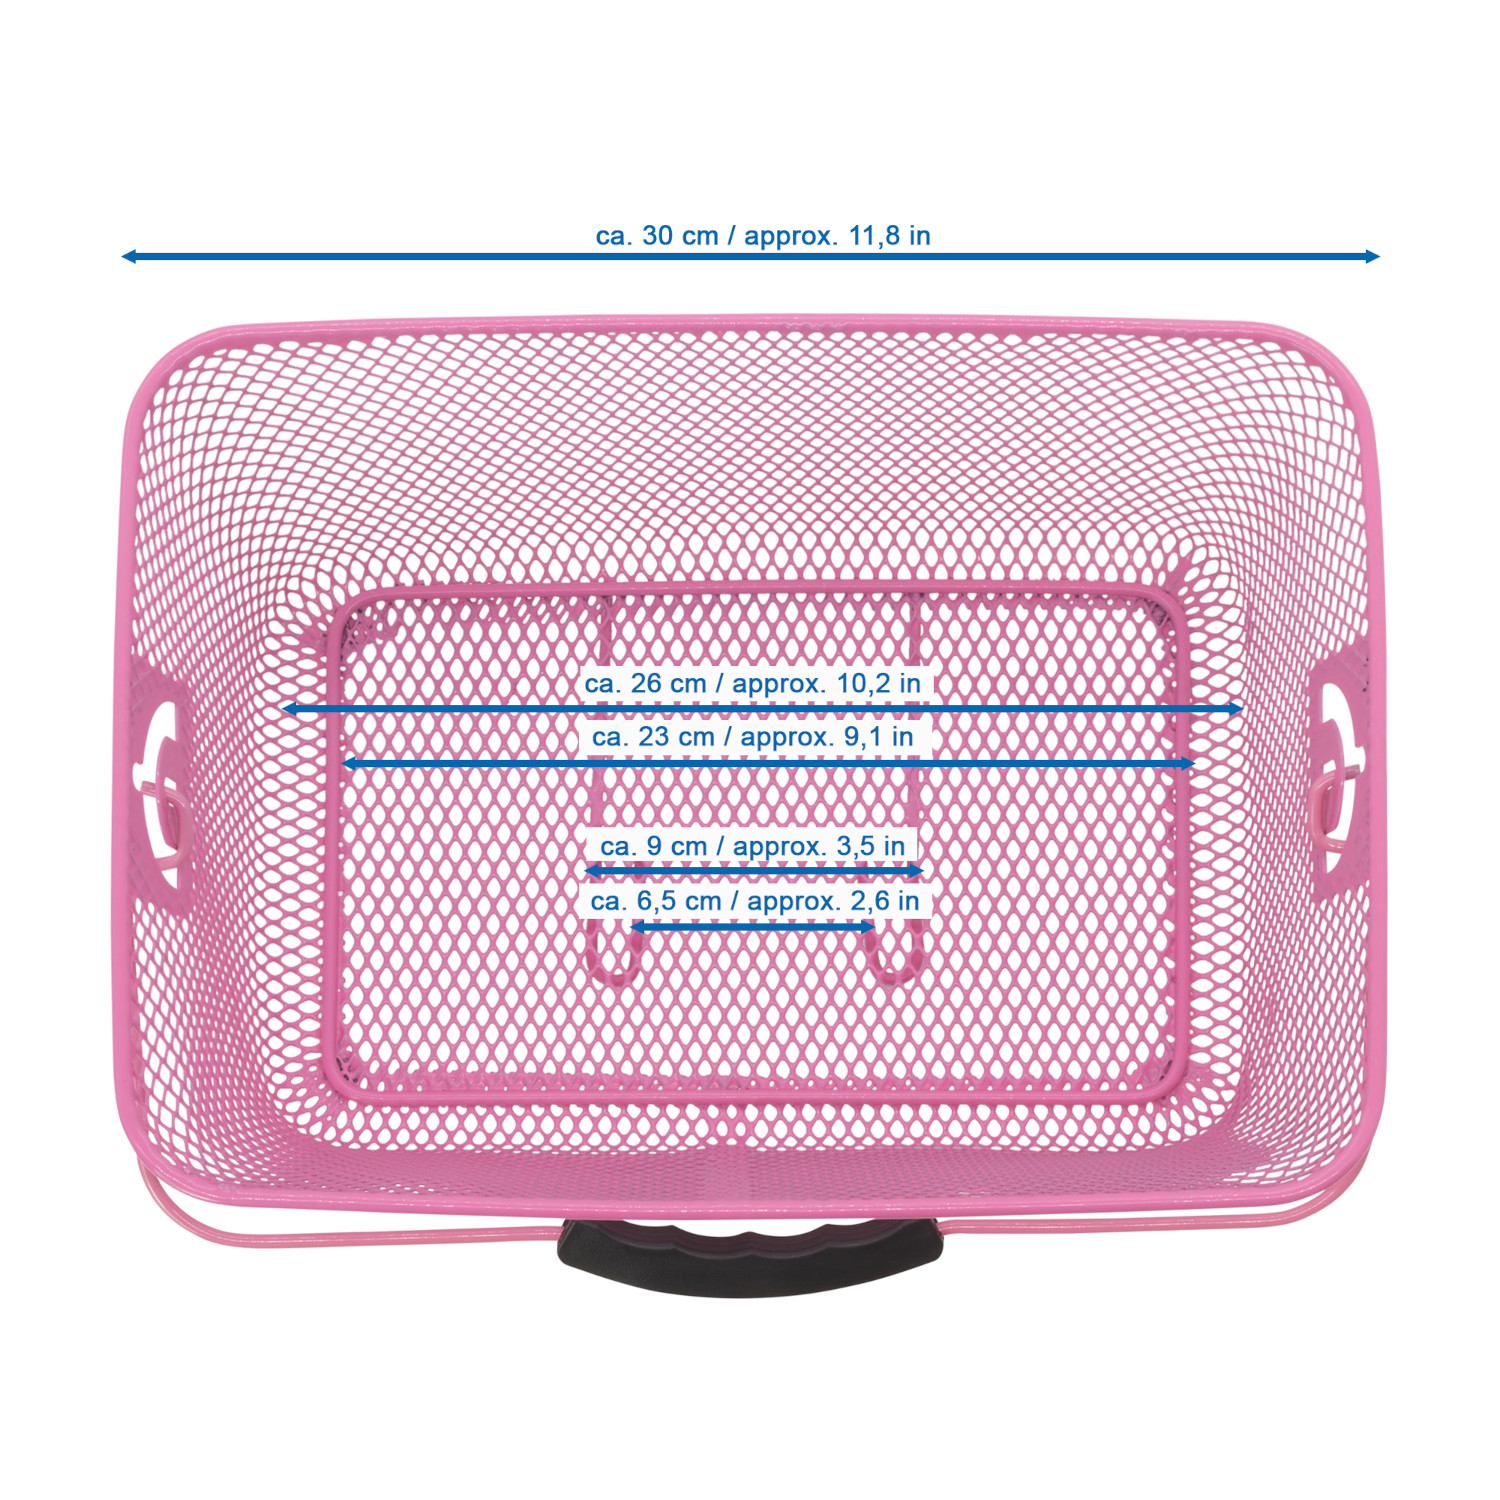 P4B Kinder-Korb für Gepäckträger Happy Kids Rear in Pink engmaschig